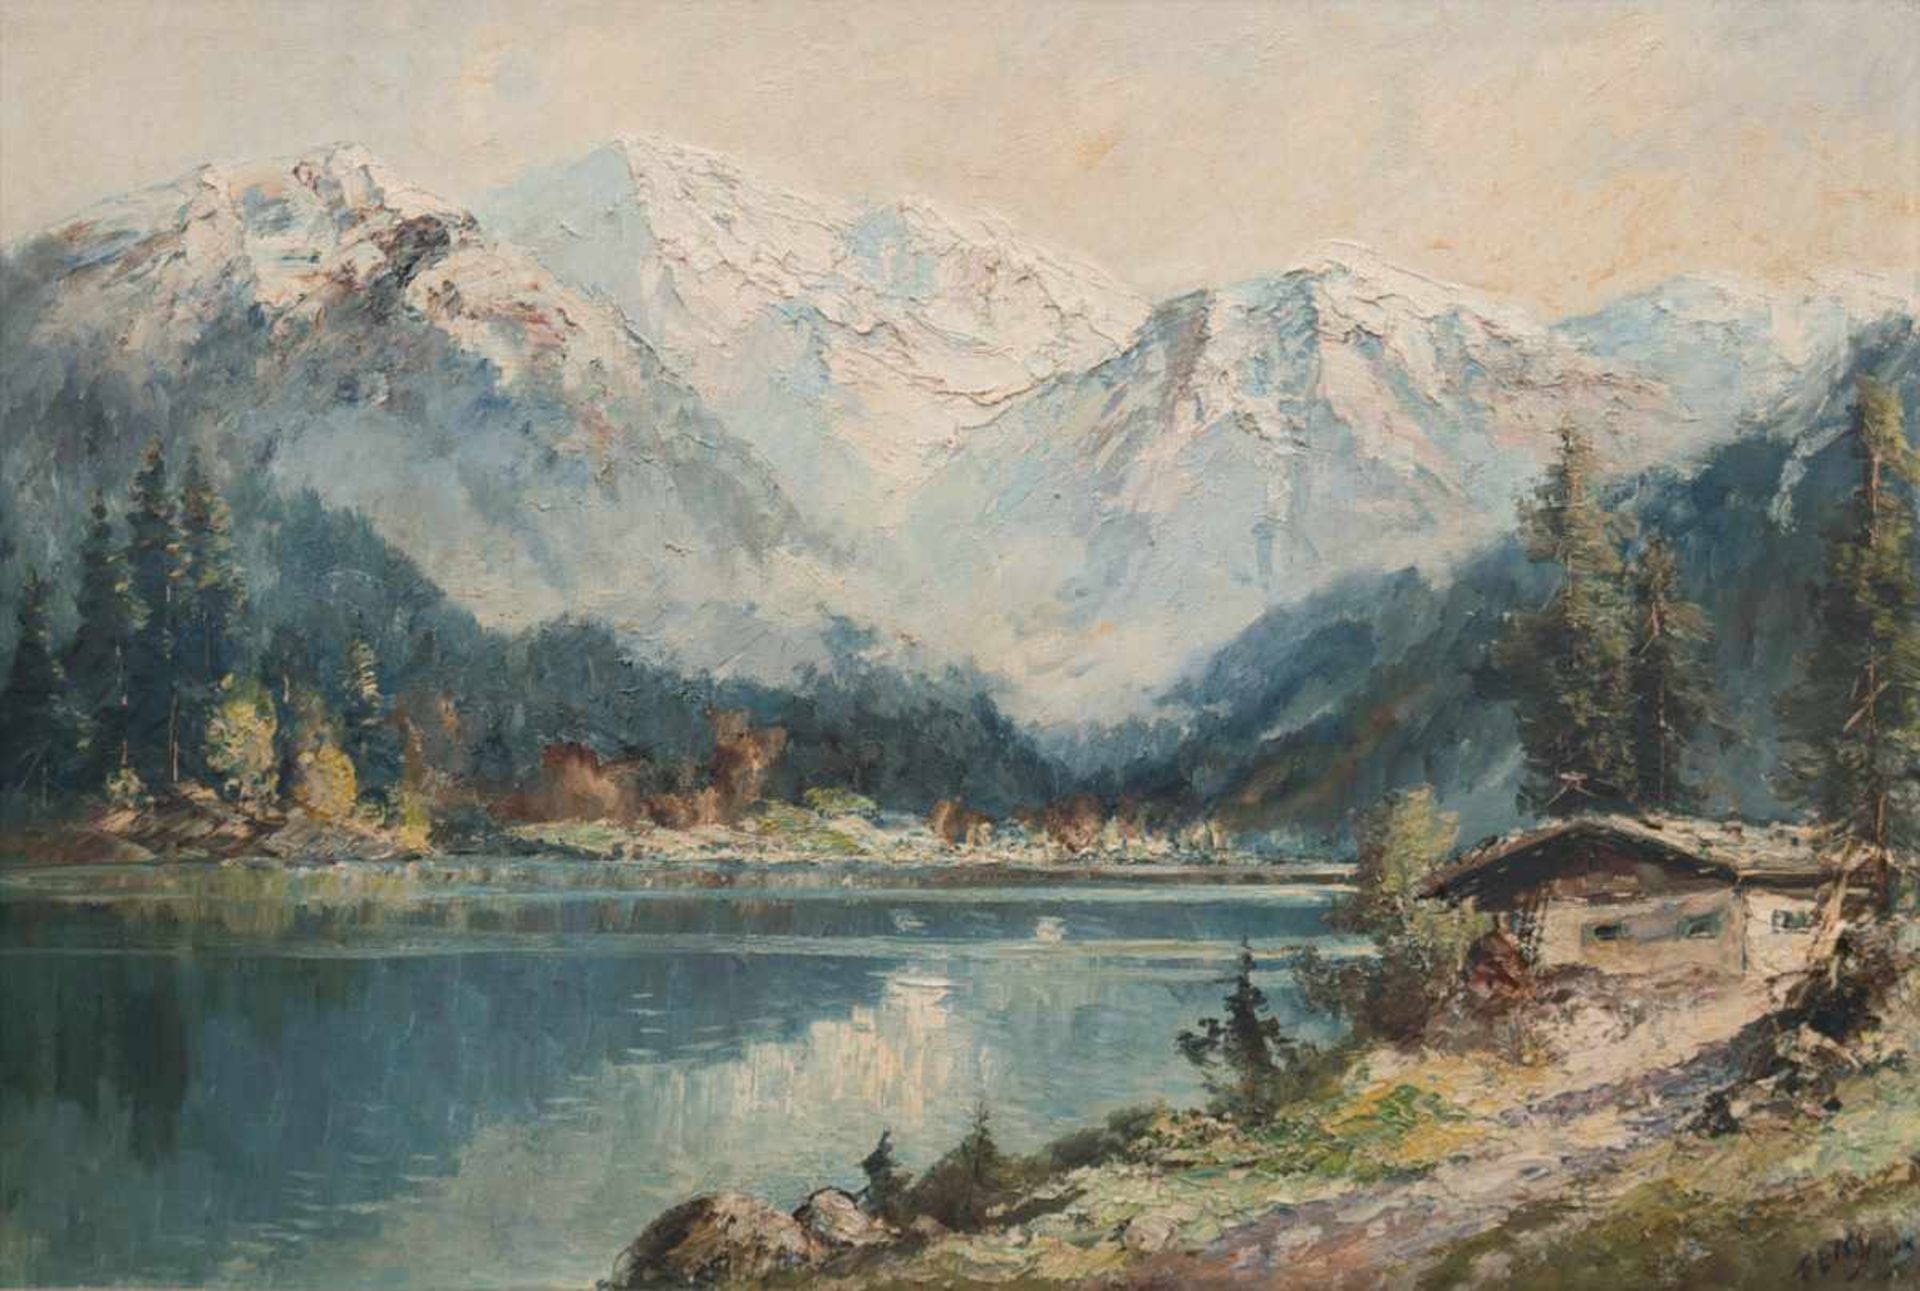 Stöver, Paula (1916 Bremen-?) "Hütte an einem Bergsee", Öl/Lw., sign. u.r., 70,5x100,5 cm,